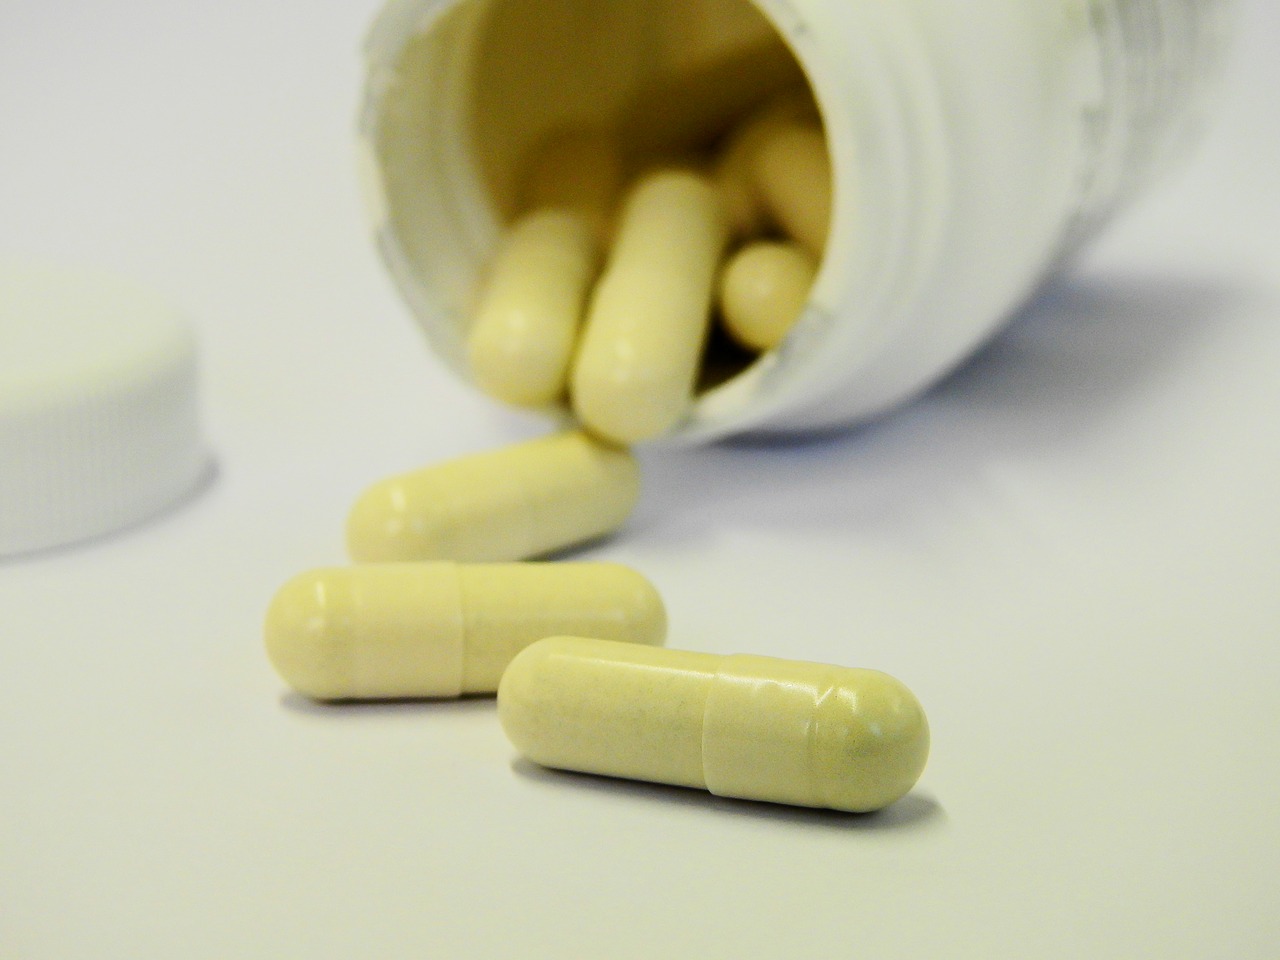 Najlepsze suplementy na odchudzanie: tabletki odchudzające, spalacze tłuszczu